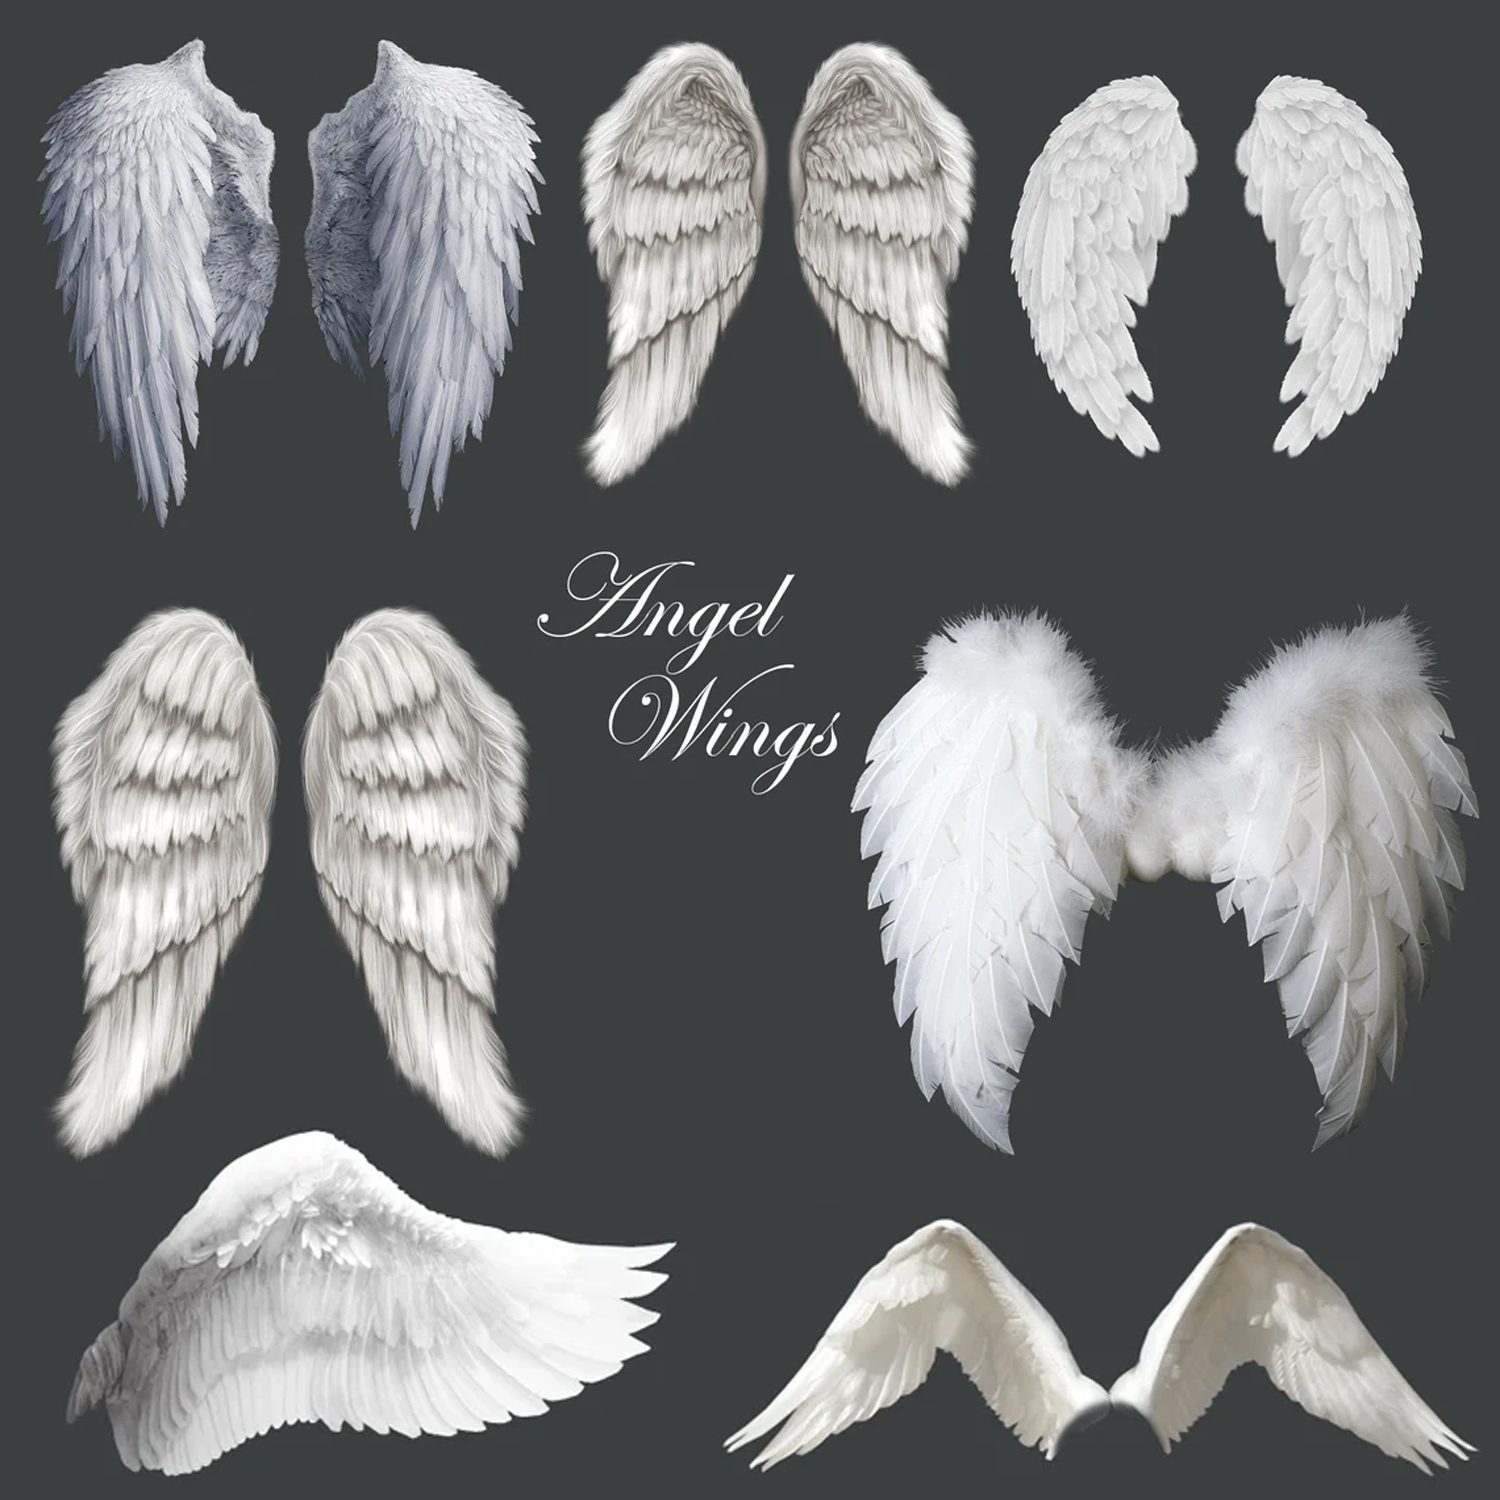 Prints of angel wings clip art.